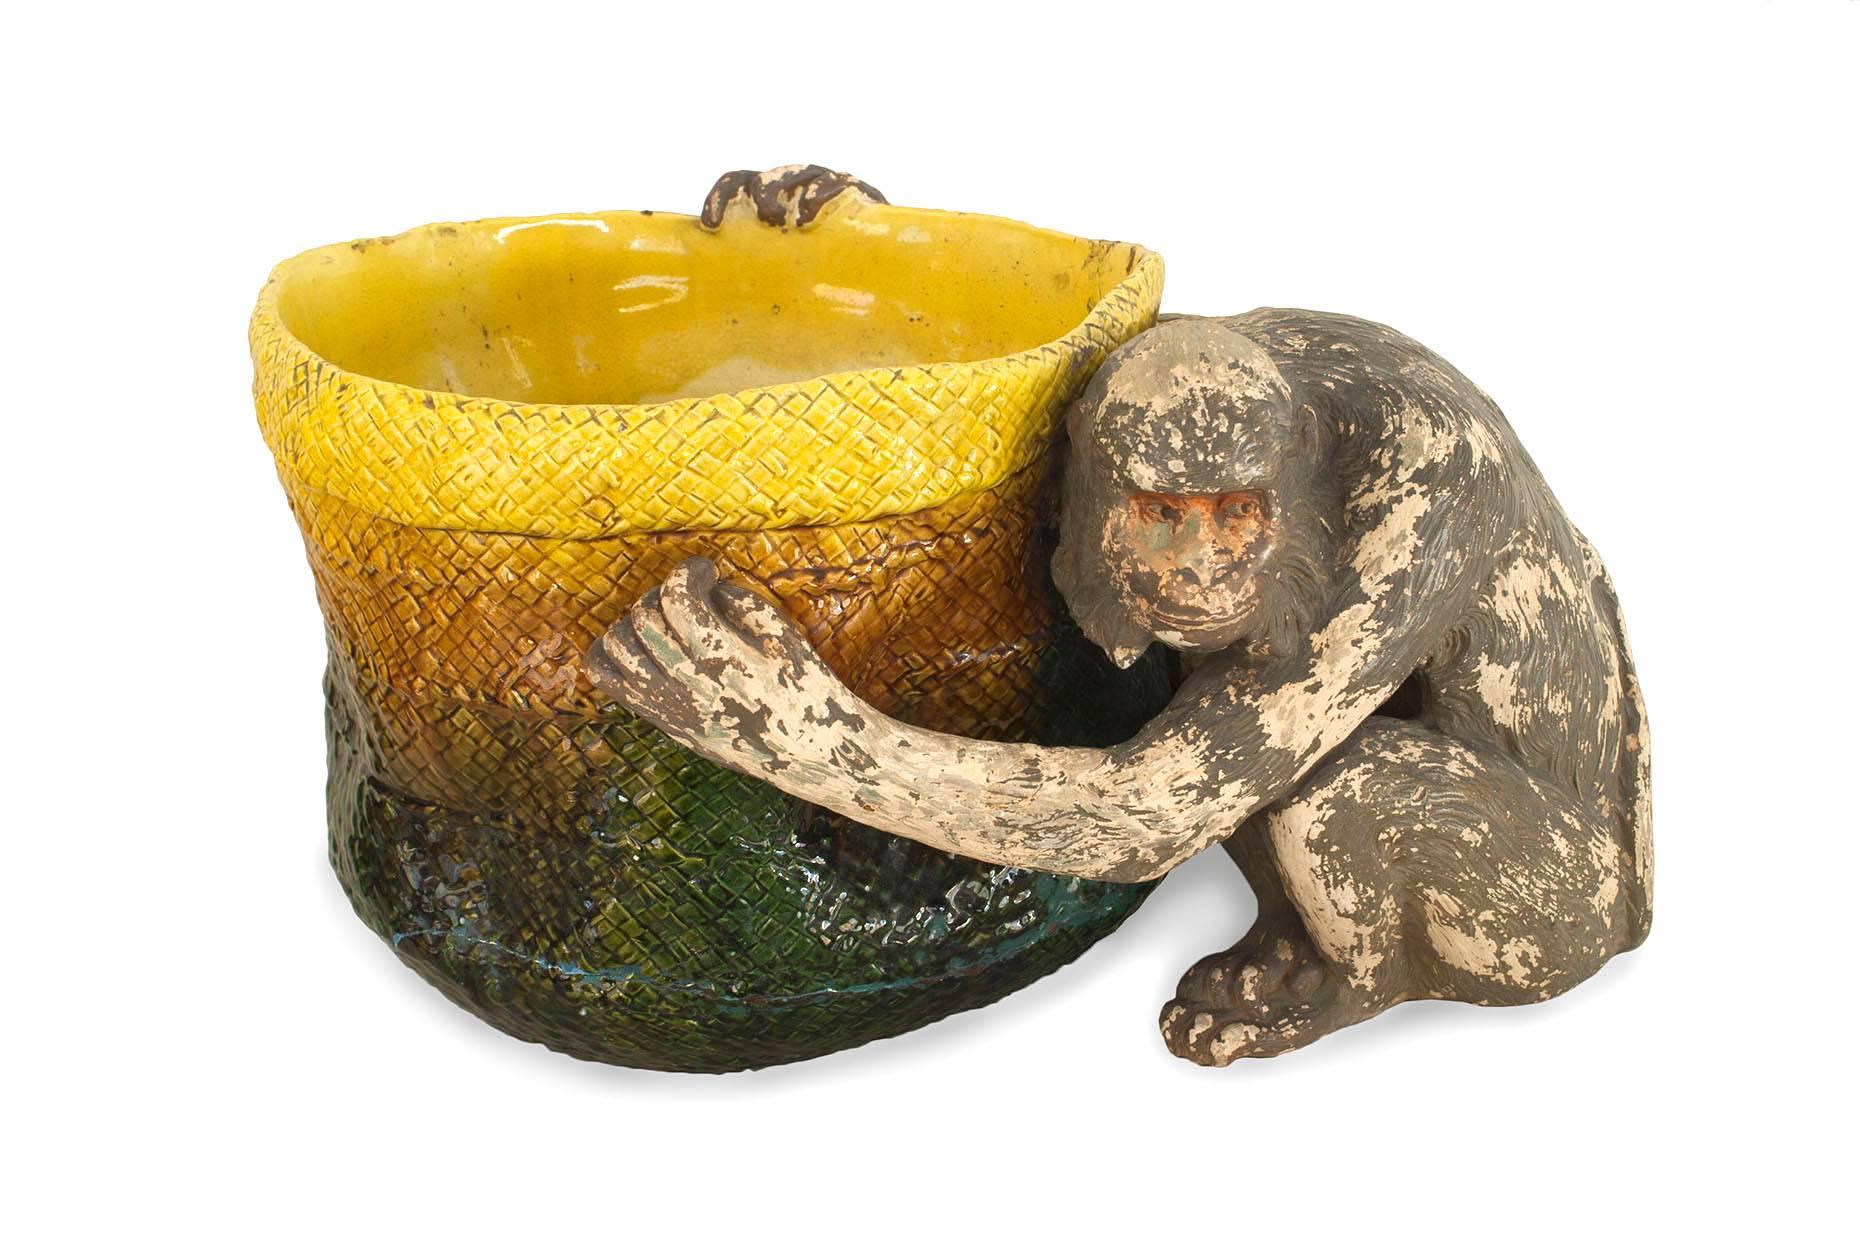 Englische viktorianische (Majolika) Porzellan-Jardiniere in grüner und gelber Korbform, die von einer sitzenden Affenfigur gehalten wird (Marken: BRETBY ENGLAND)
